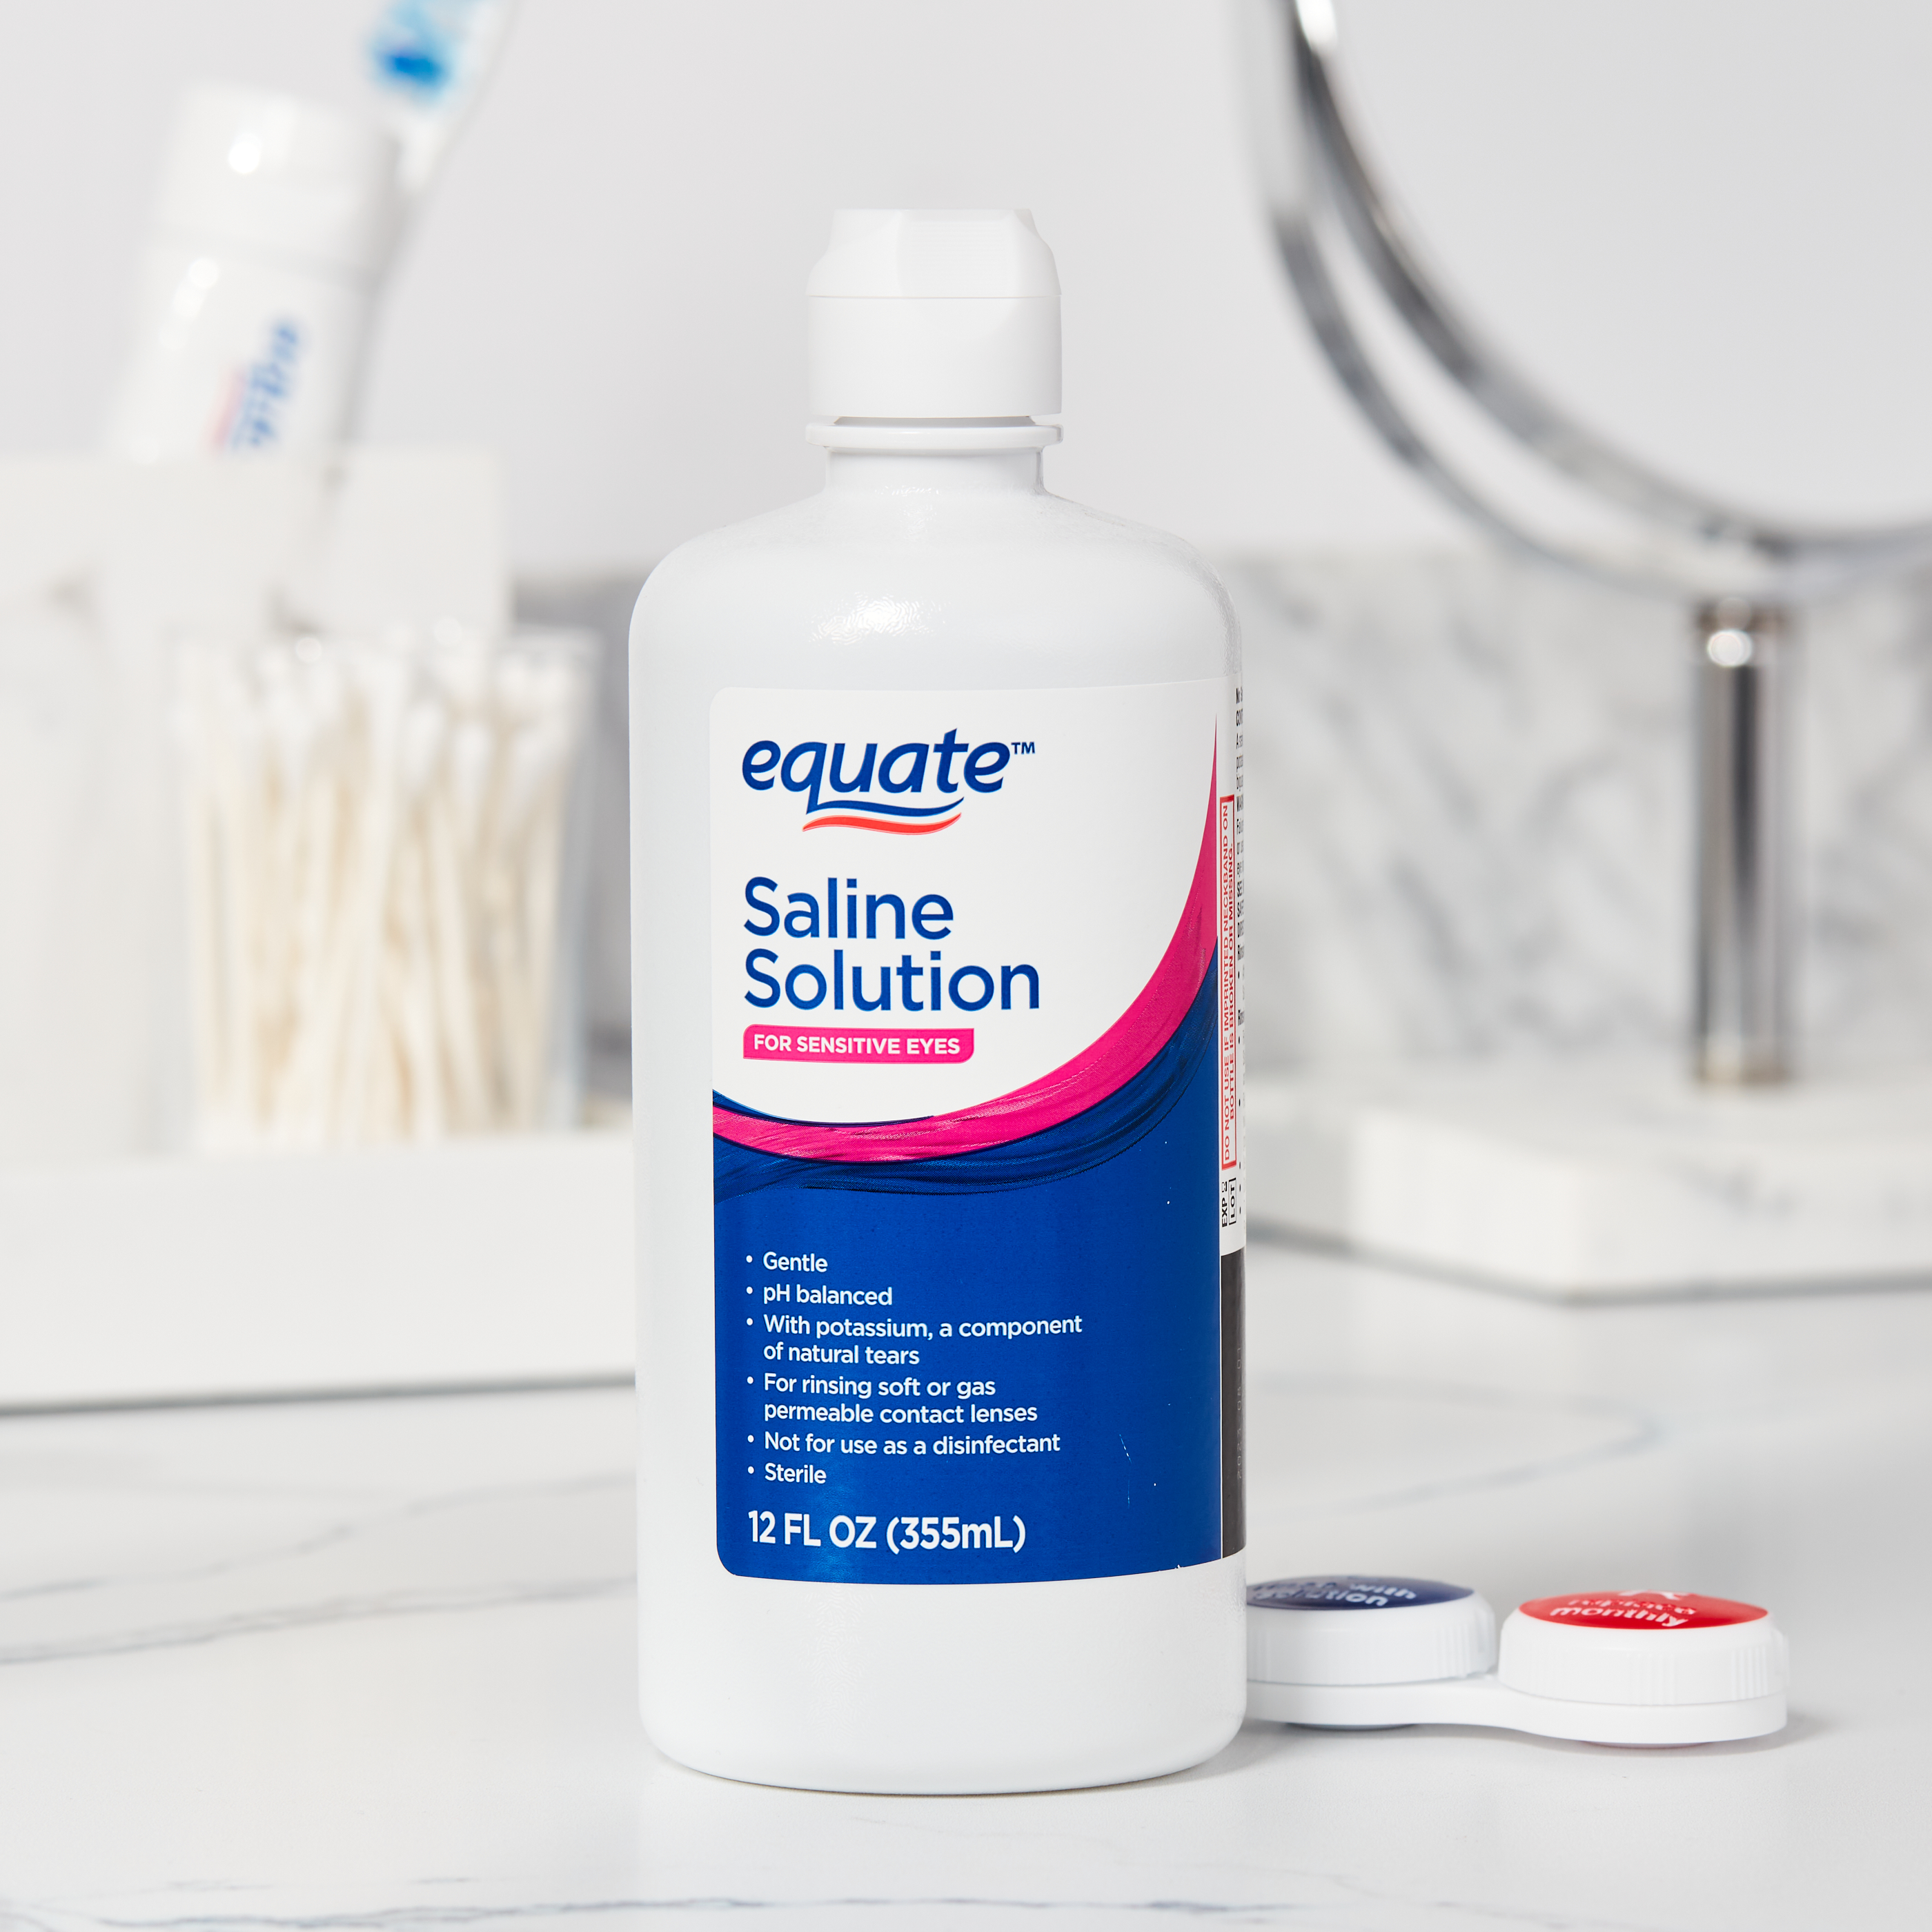 Equate Saline Solution For Sensitive Eyes, 12 fl oz, 2 Pack - image 2 of 9